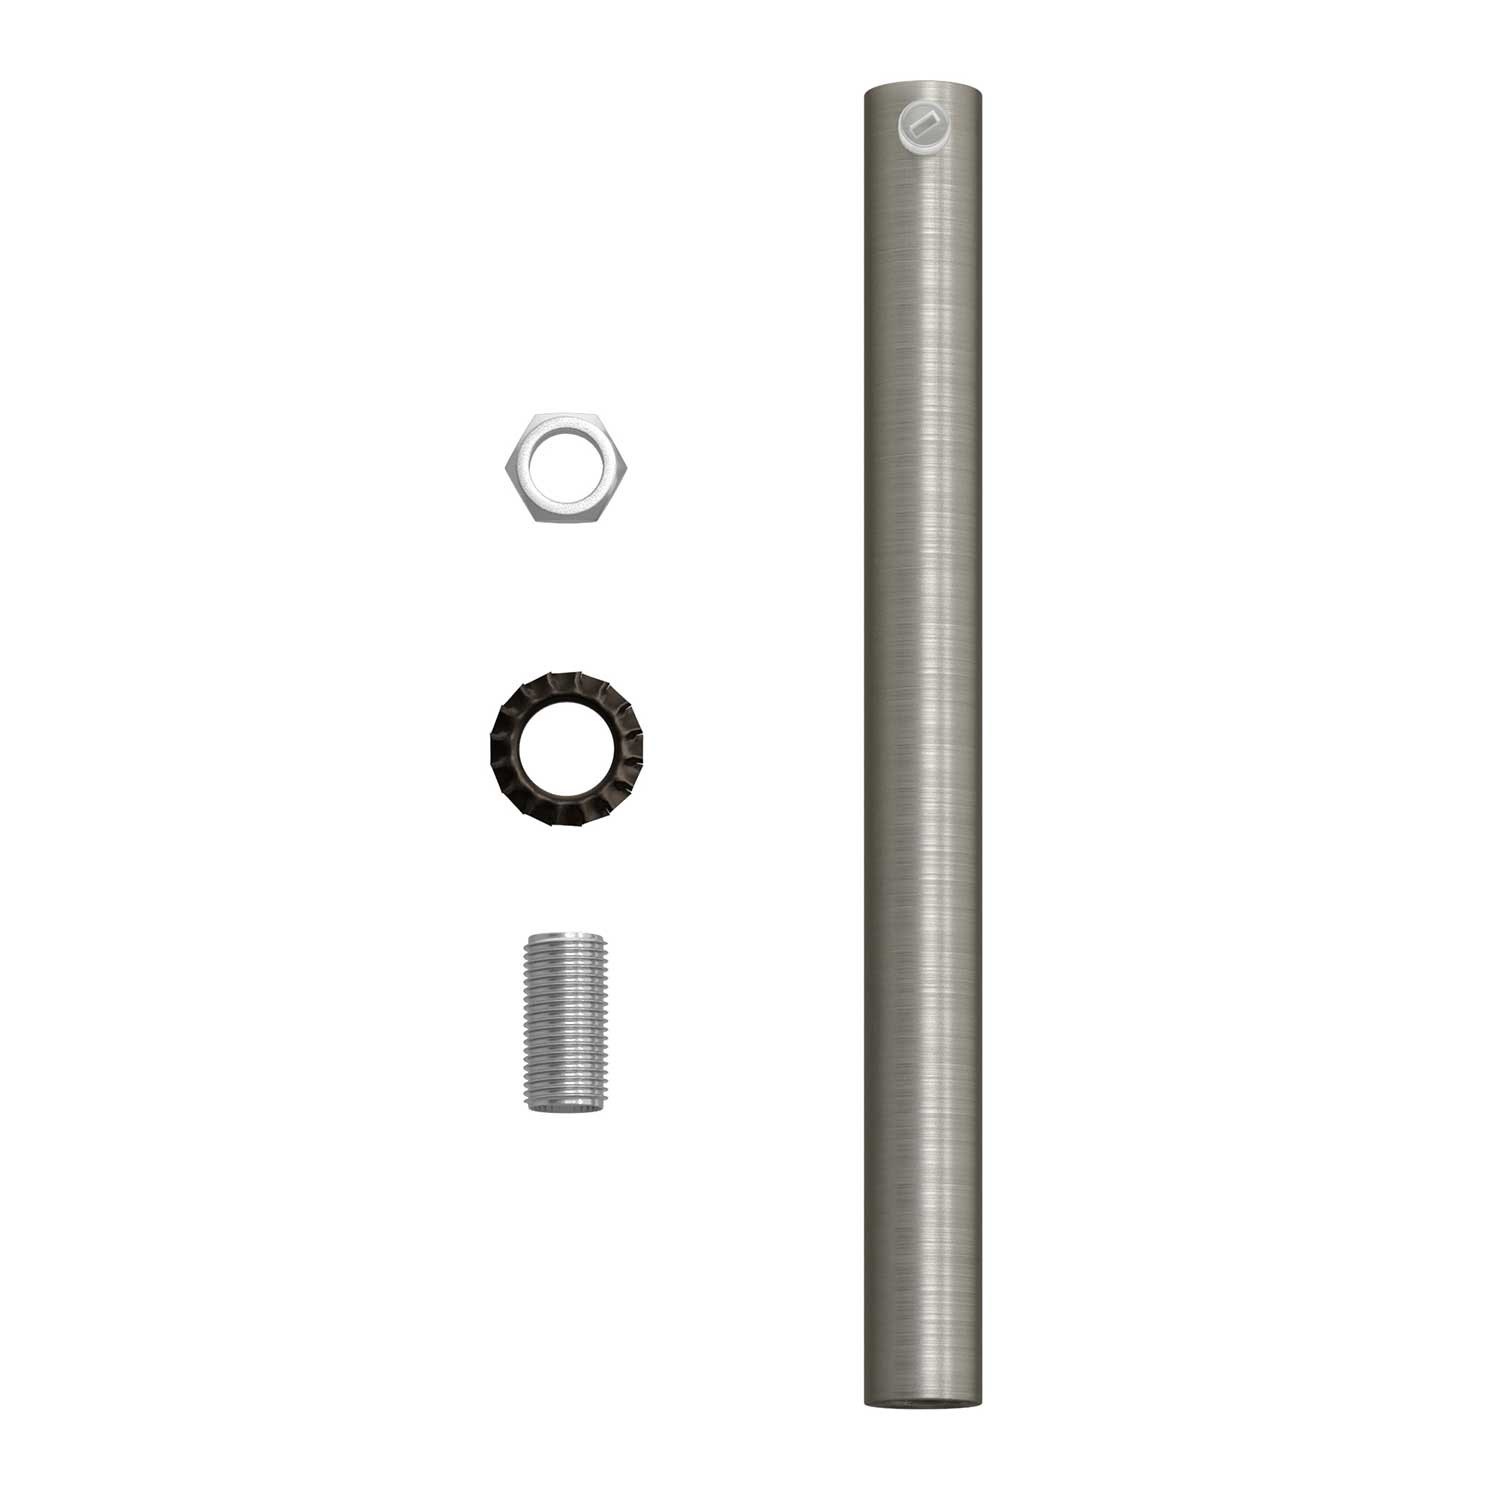 Cilindrische metalen kabelklem van 15 cm, compleet met pendelbuis, moer en ring